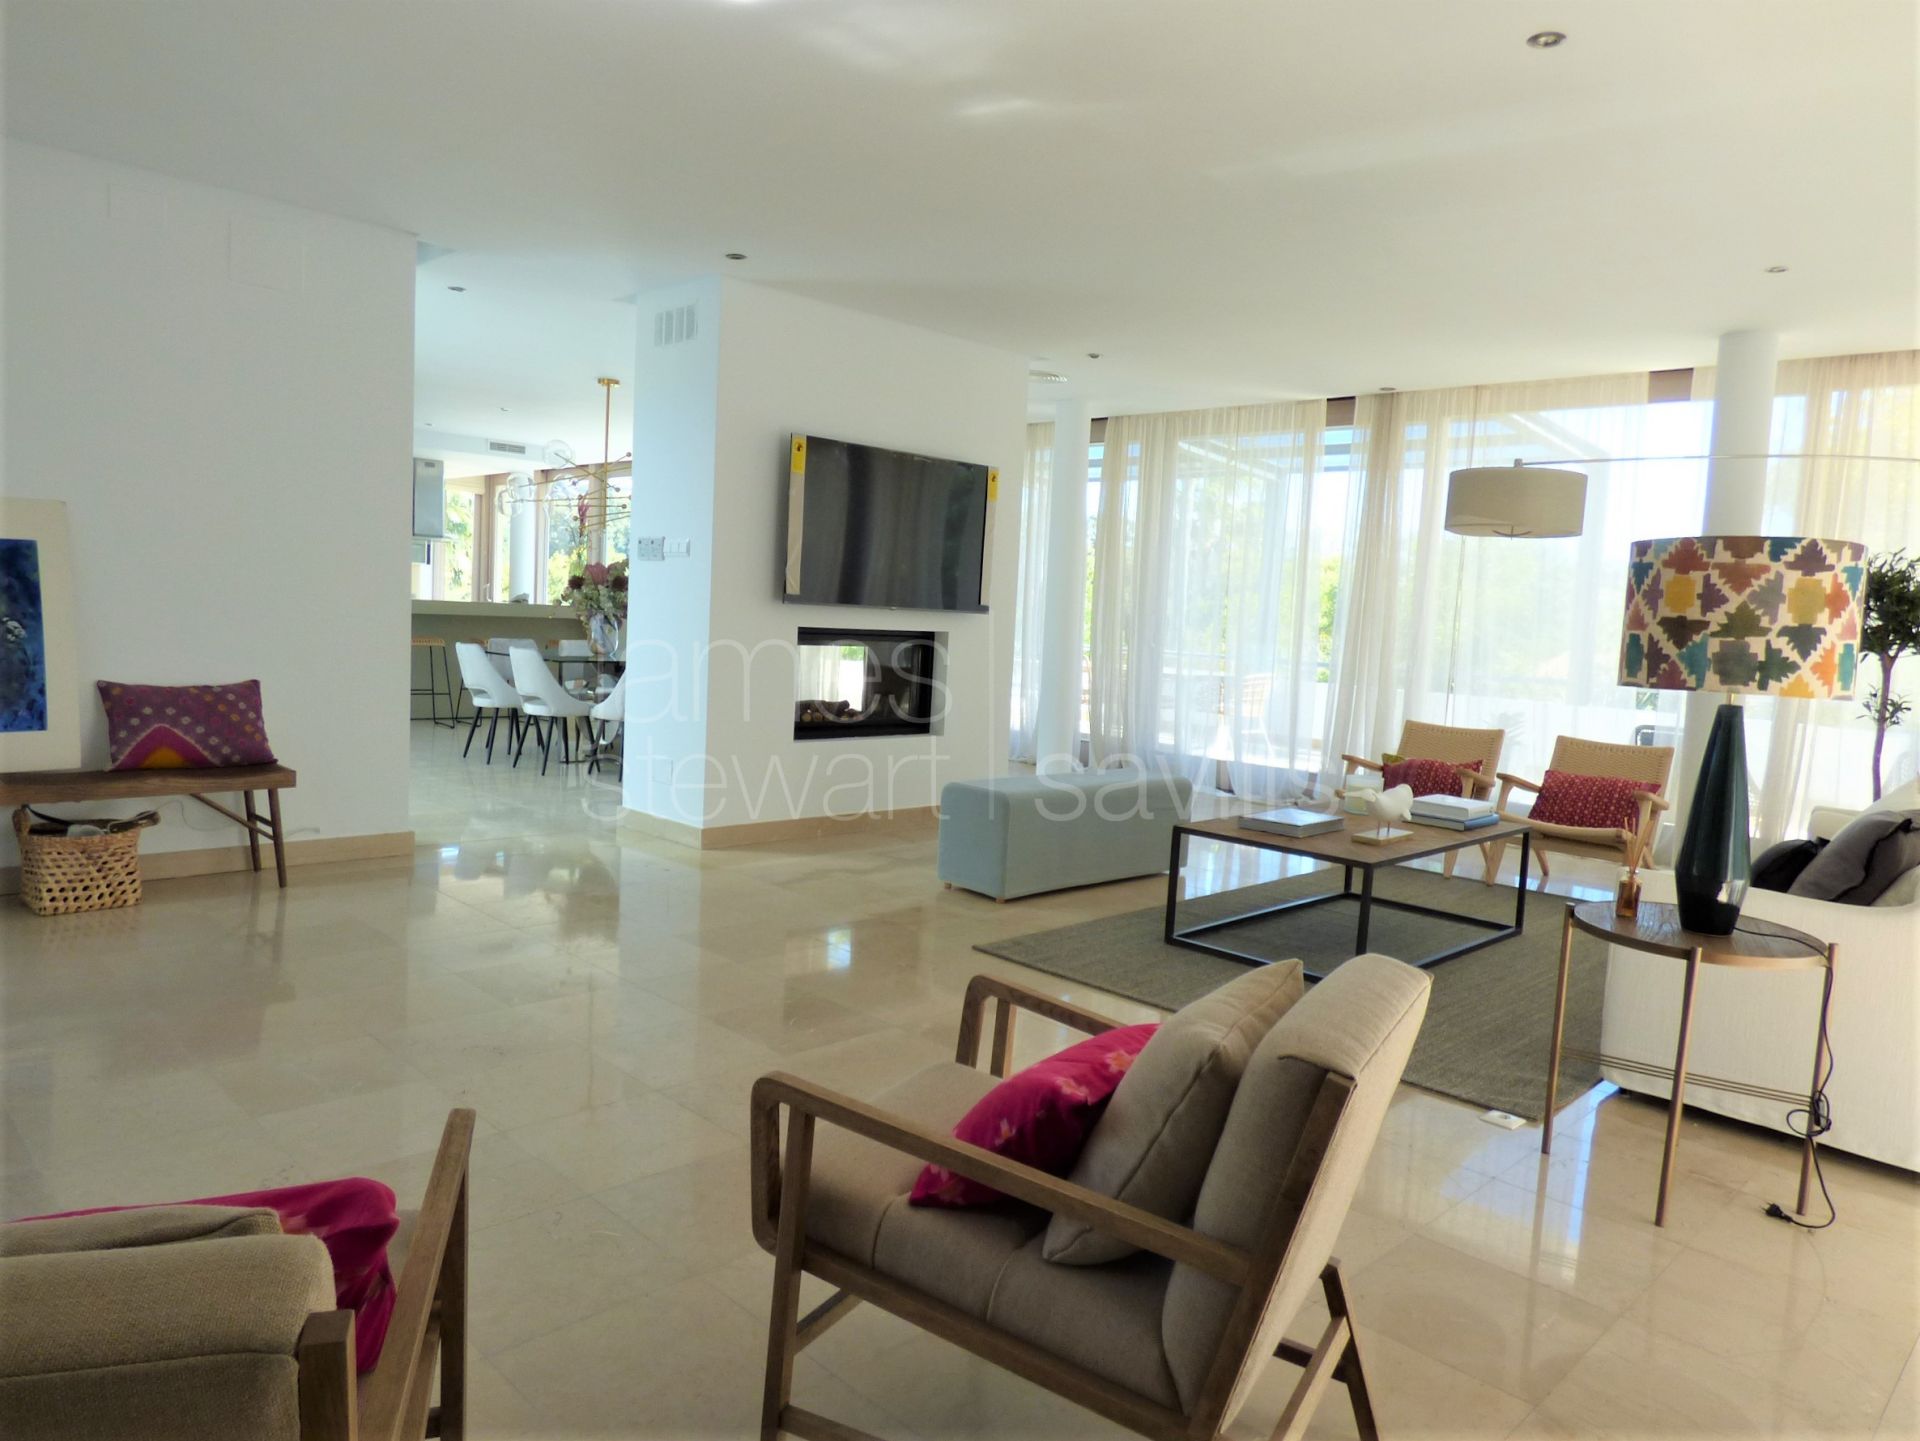 Villa de estilo contemporáneo y muy espaciosa - ideal para una gran familia.